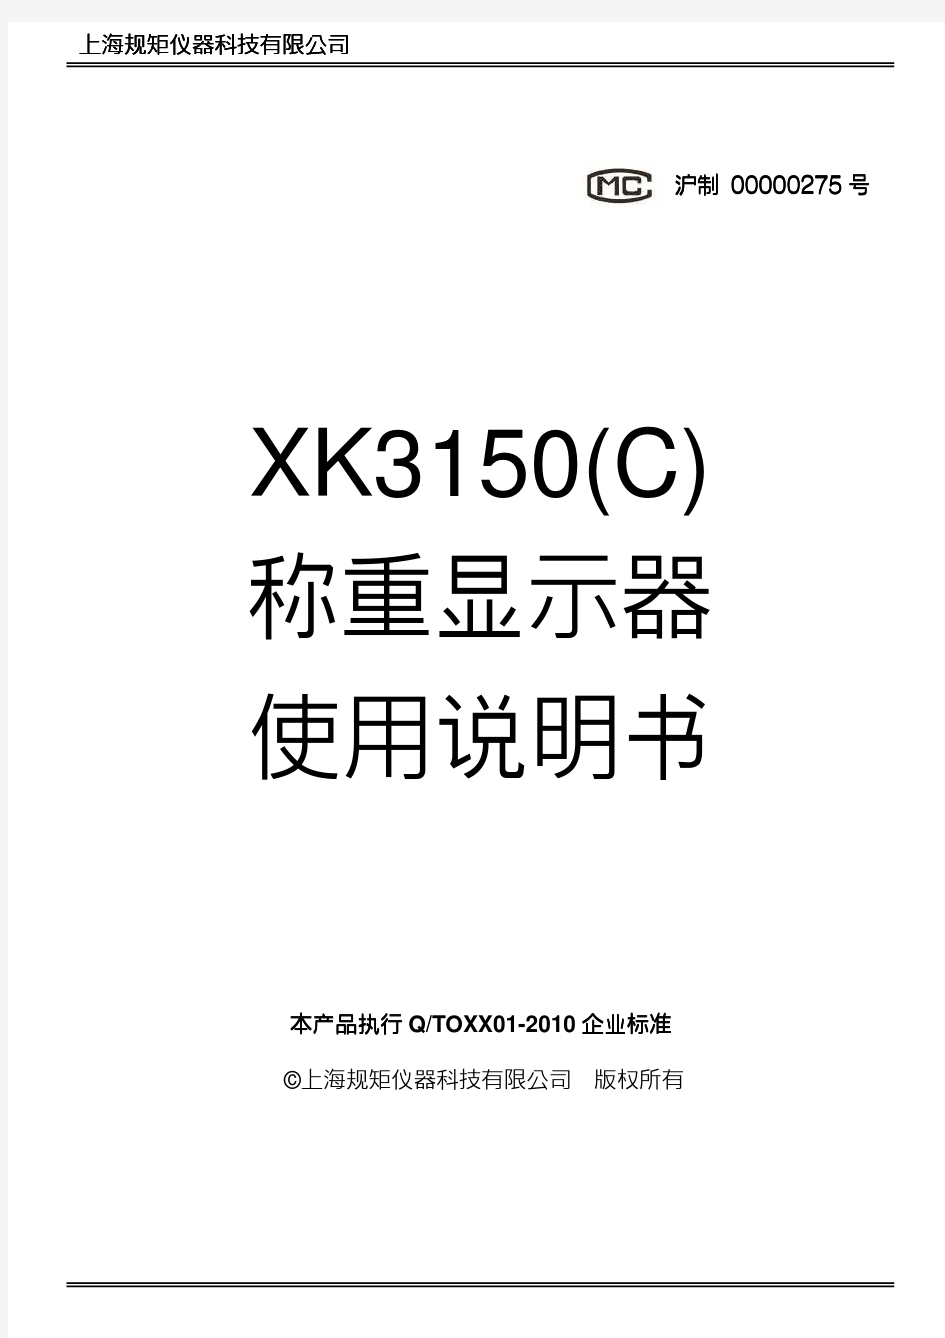 简中说明书XK3150 C系列称重显示器PC